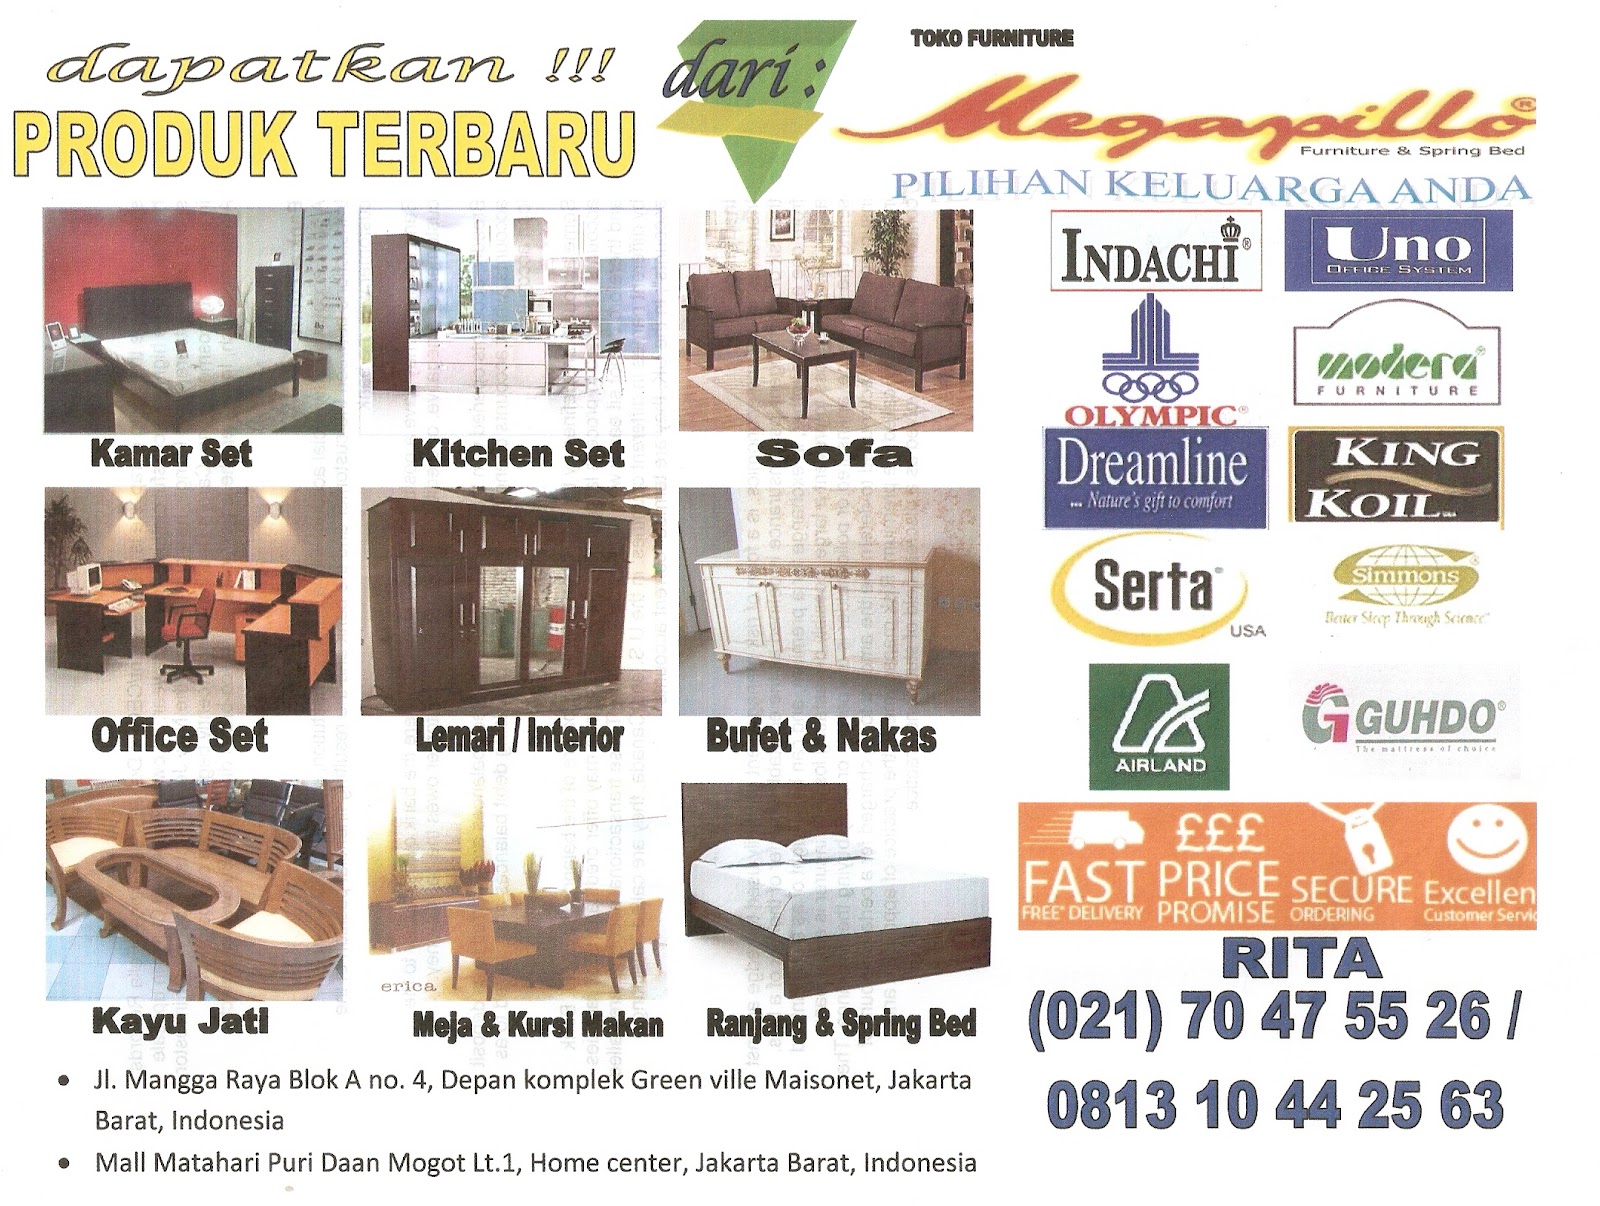 Megapillo Furniture Spring Bed Online Shop Brochure 2